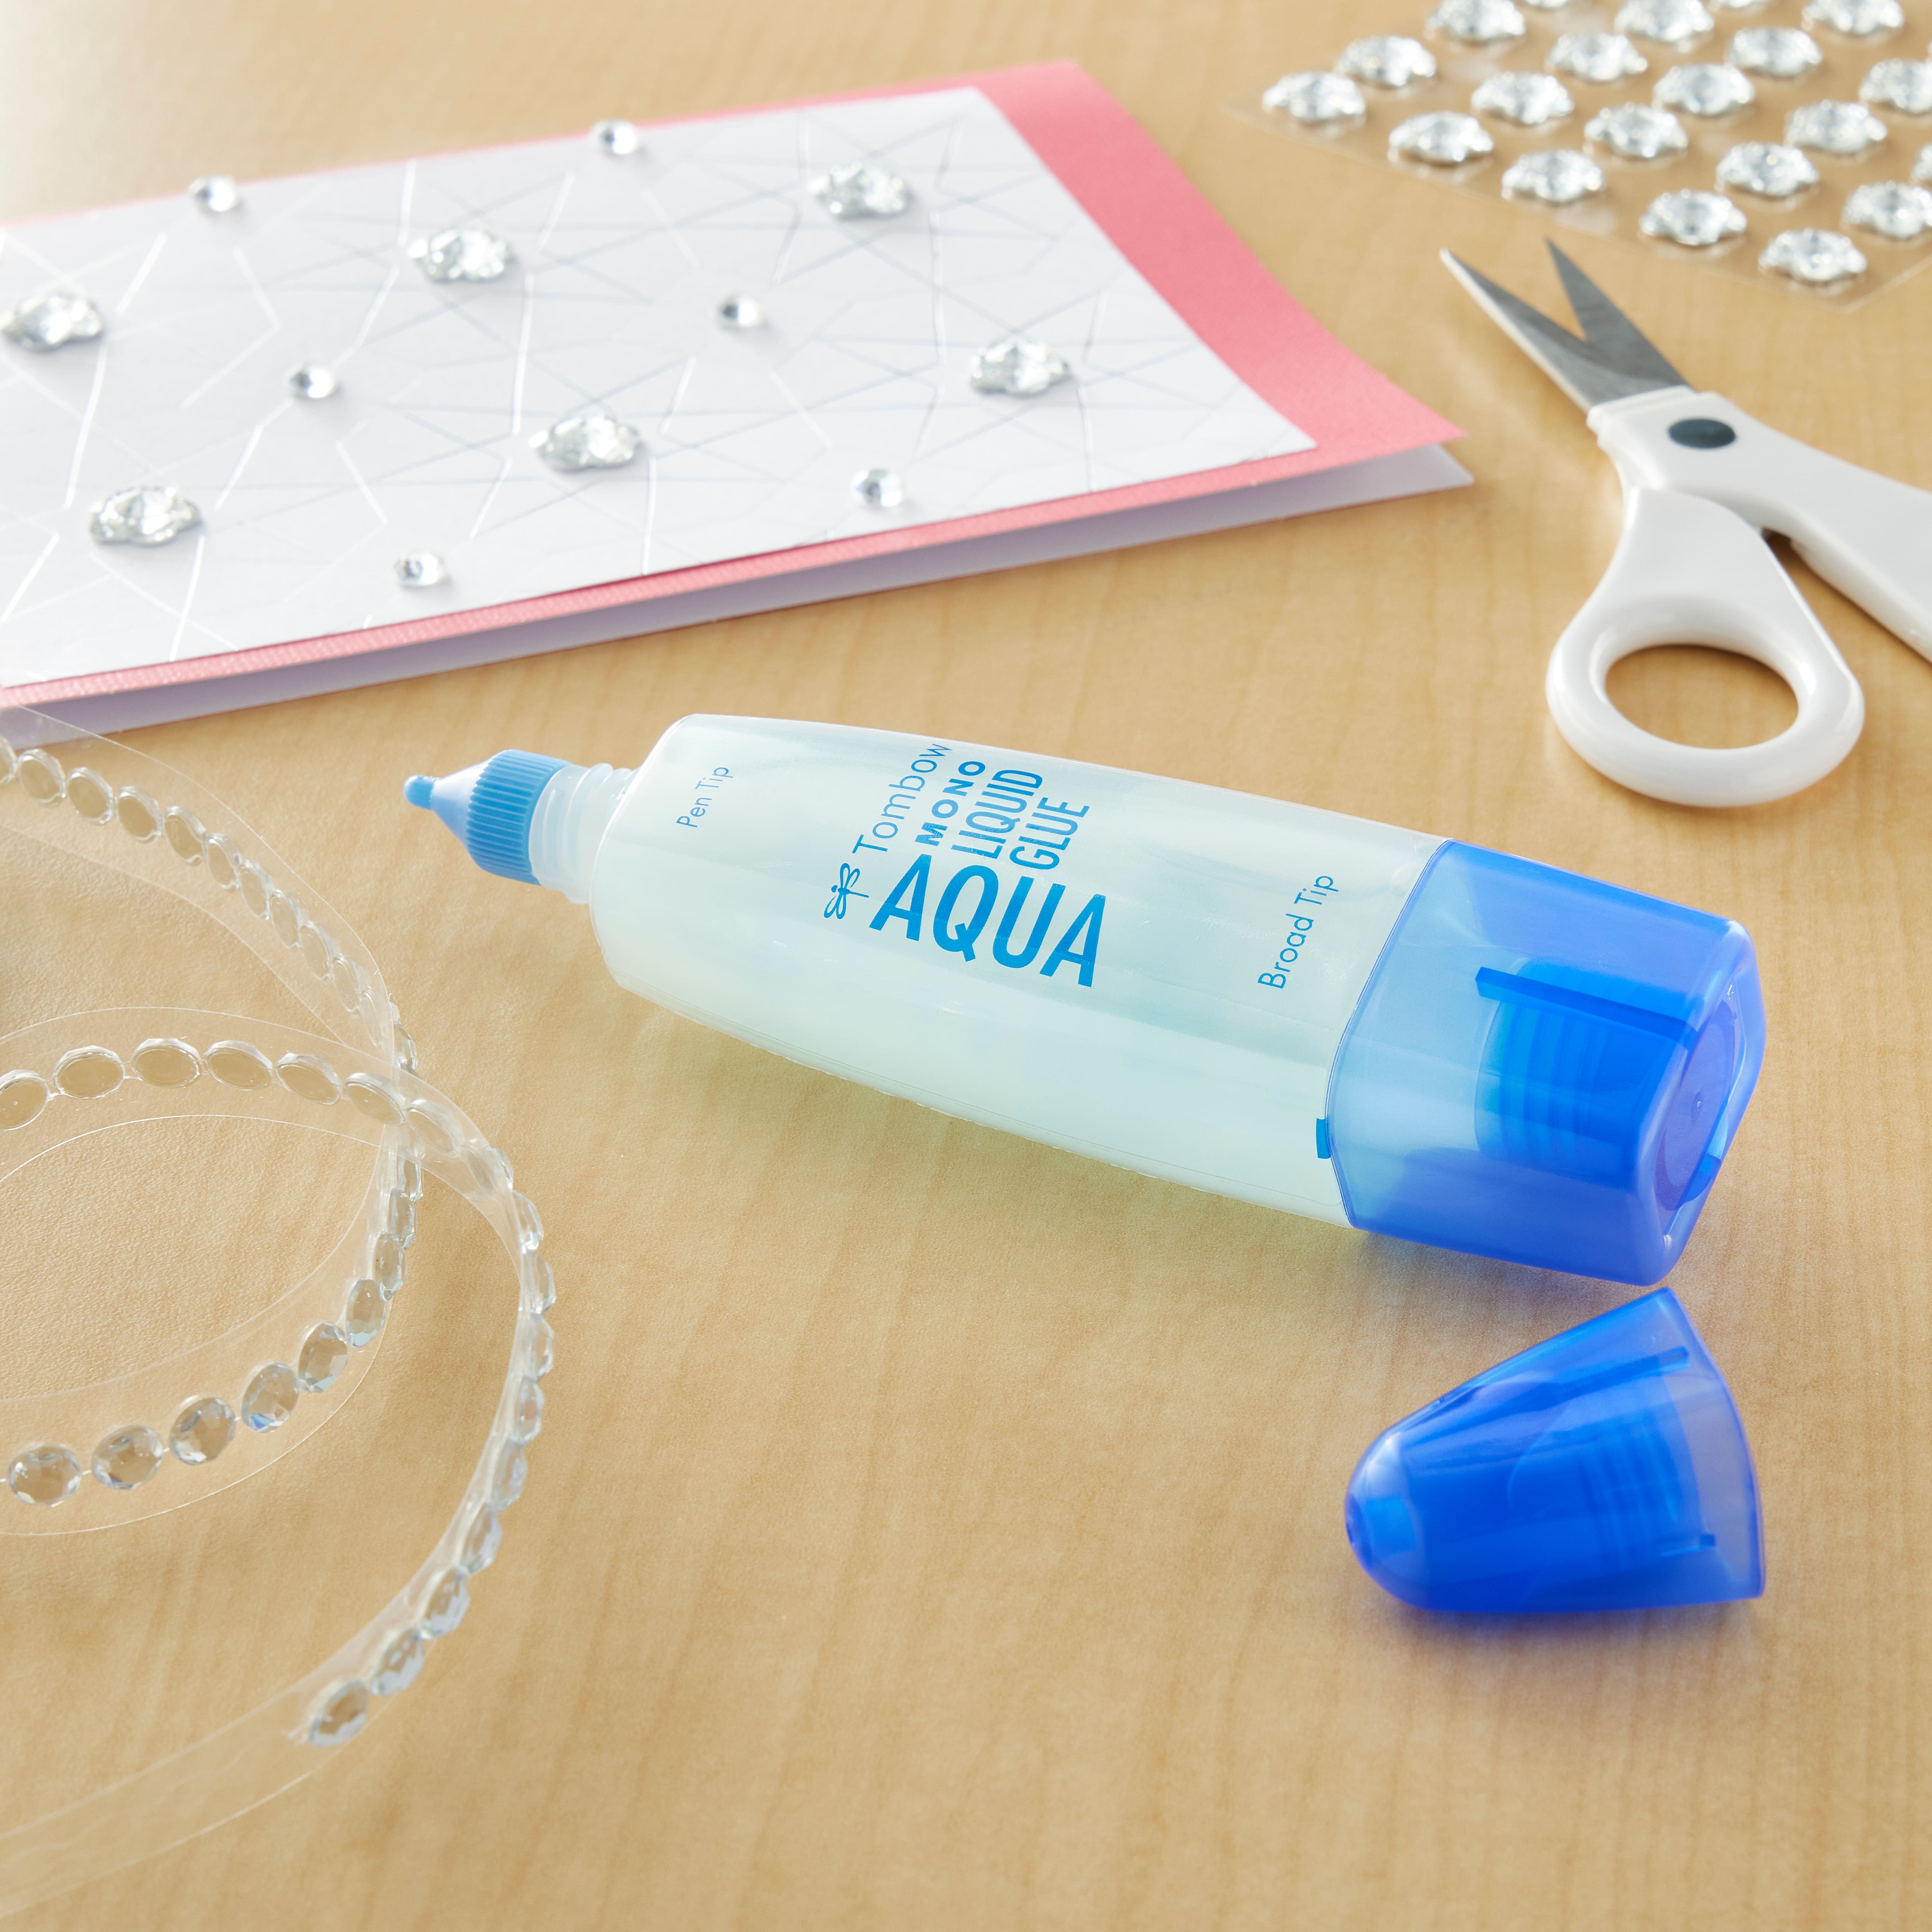 MONO Aqua Liquid Glue, 500 ml Refill, Clear Glue